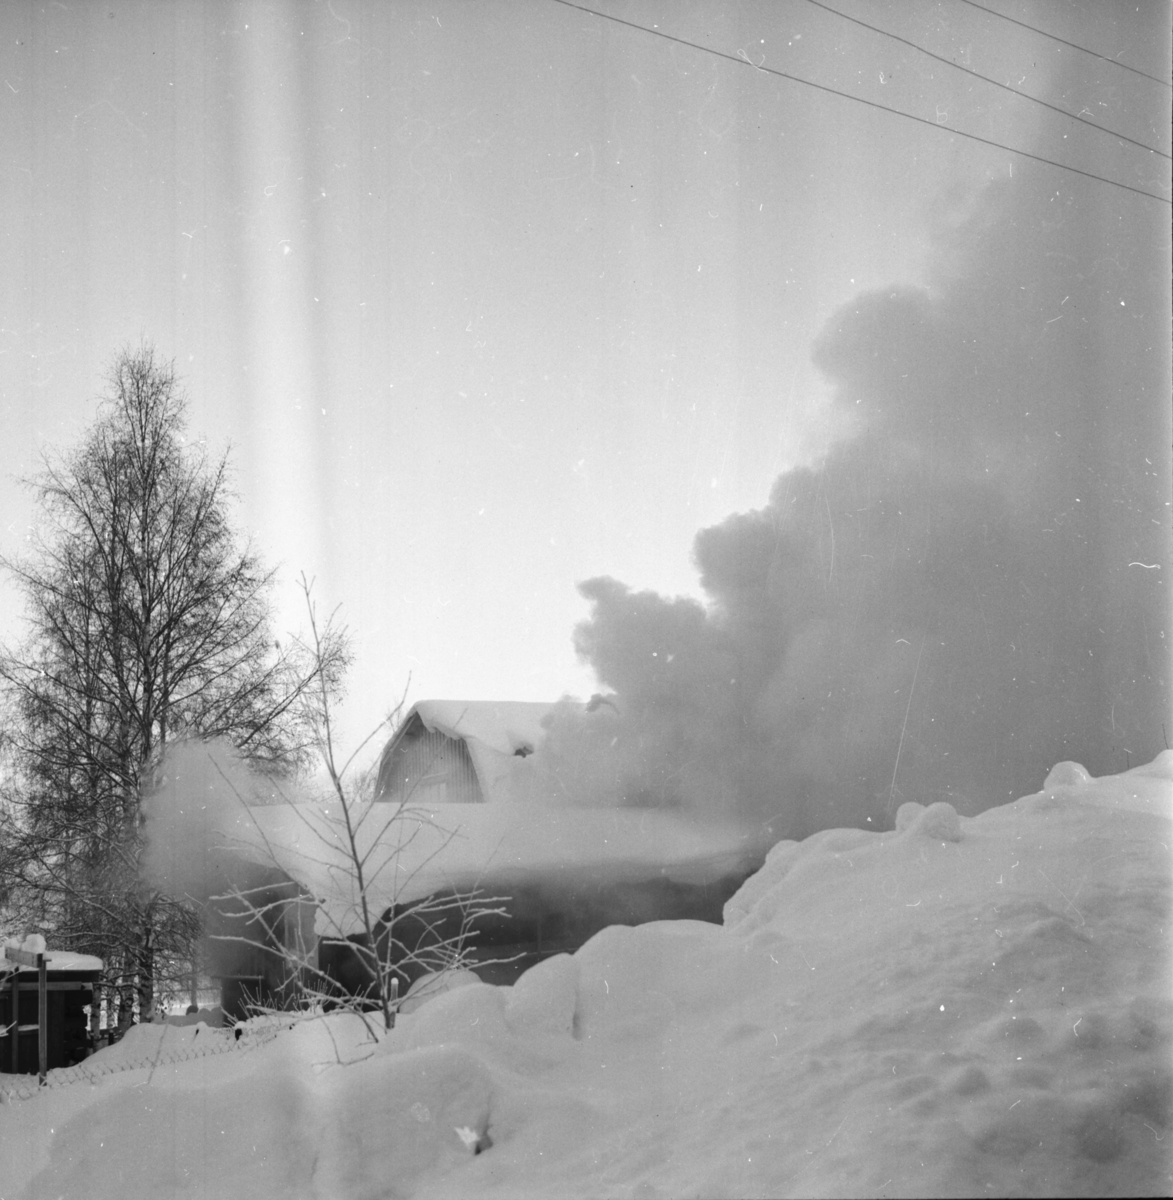 Brand på åsen
Bollnäs februari 1956